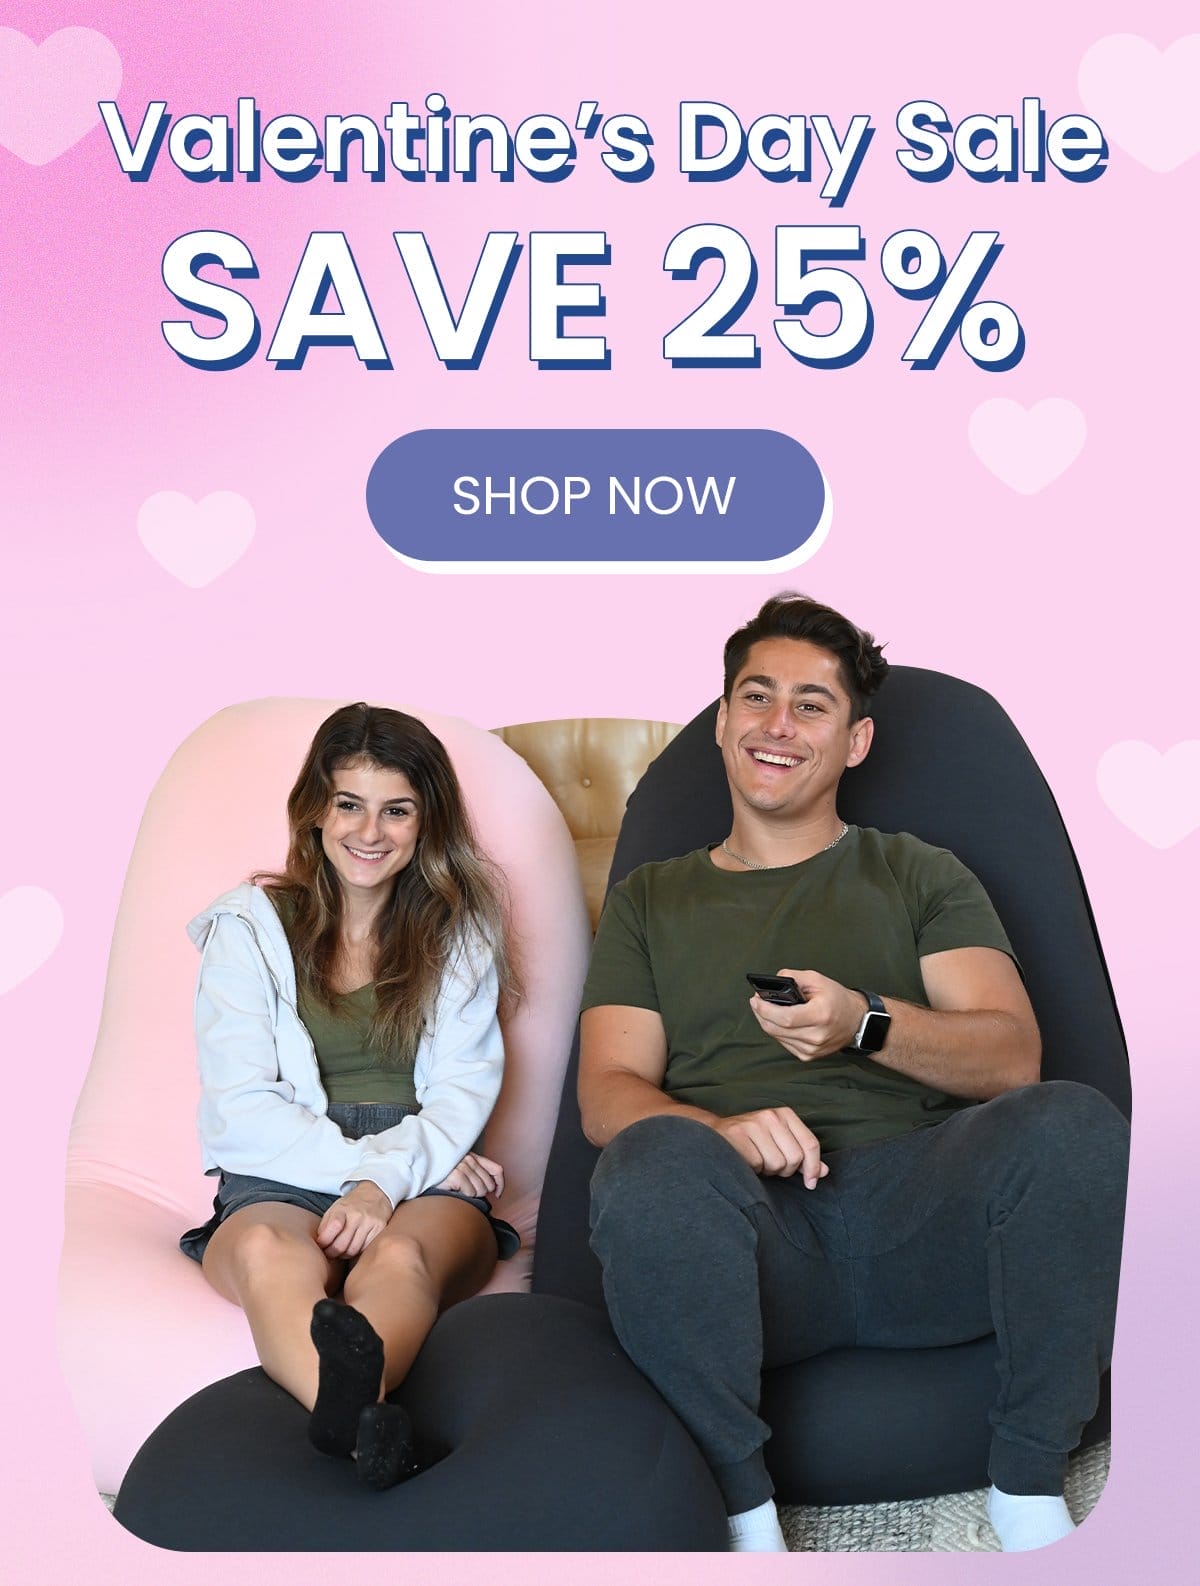 Valentine's Day Sale: Save 25%